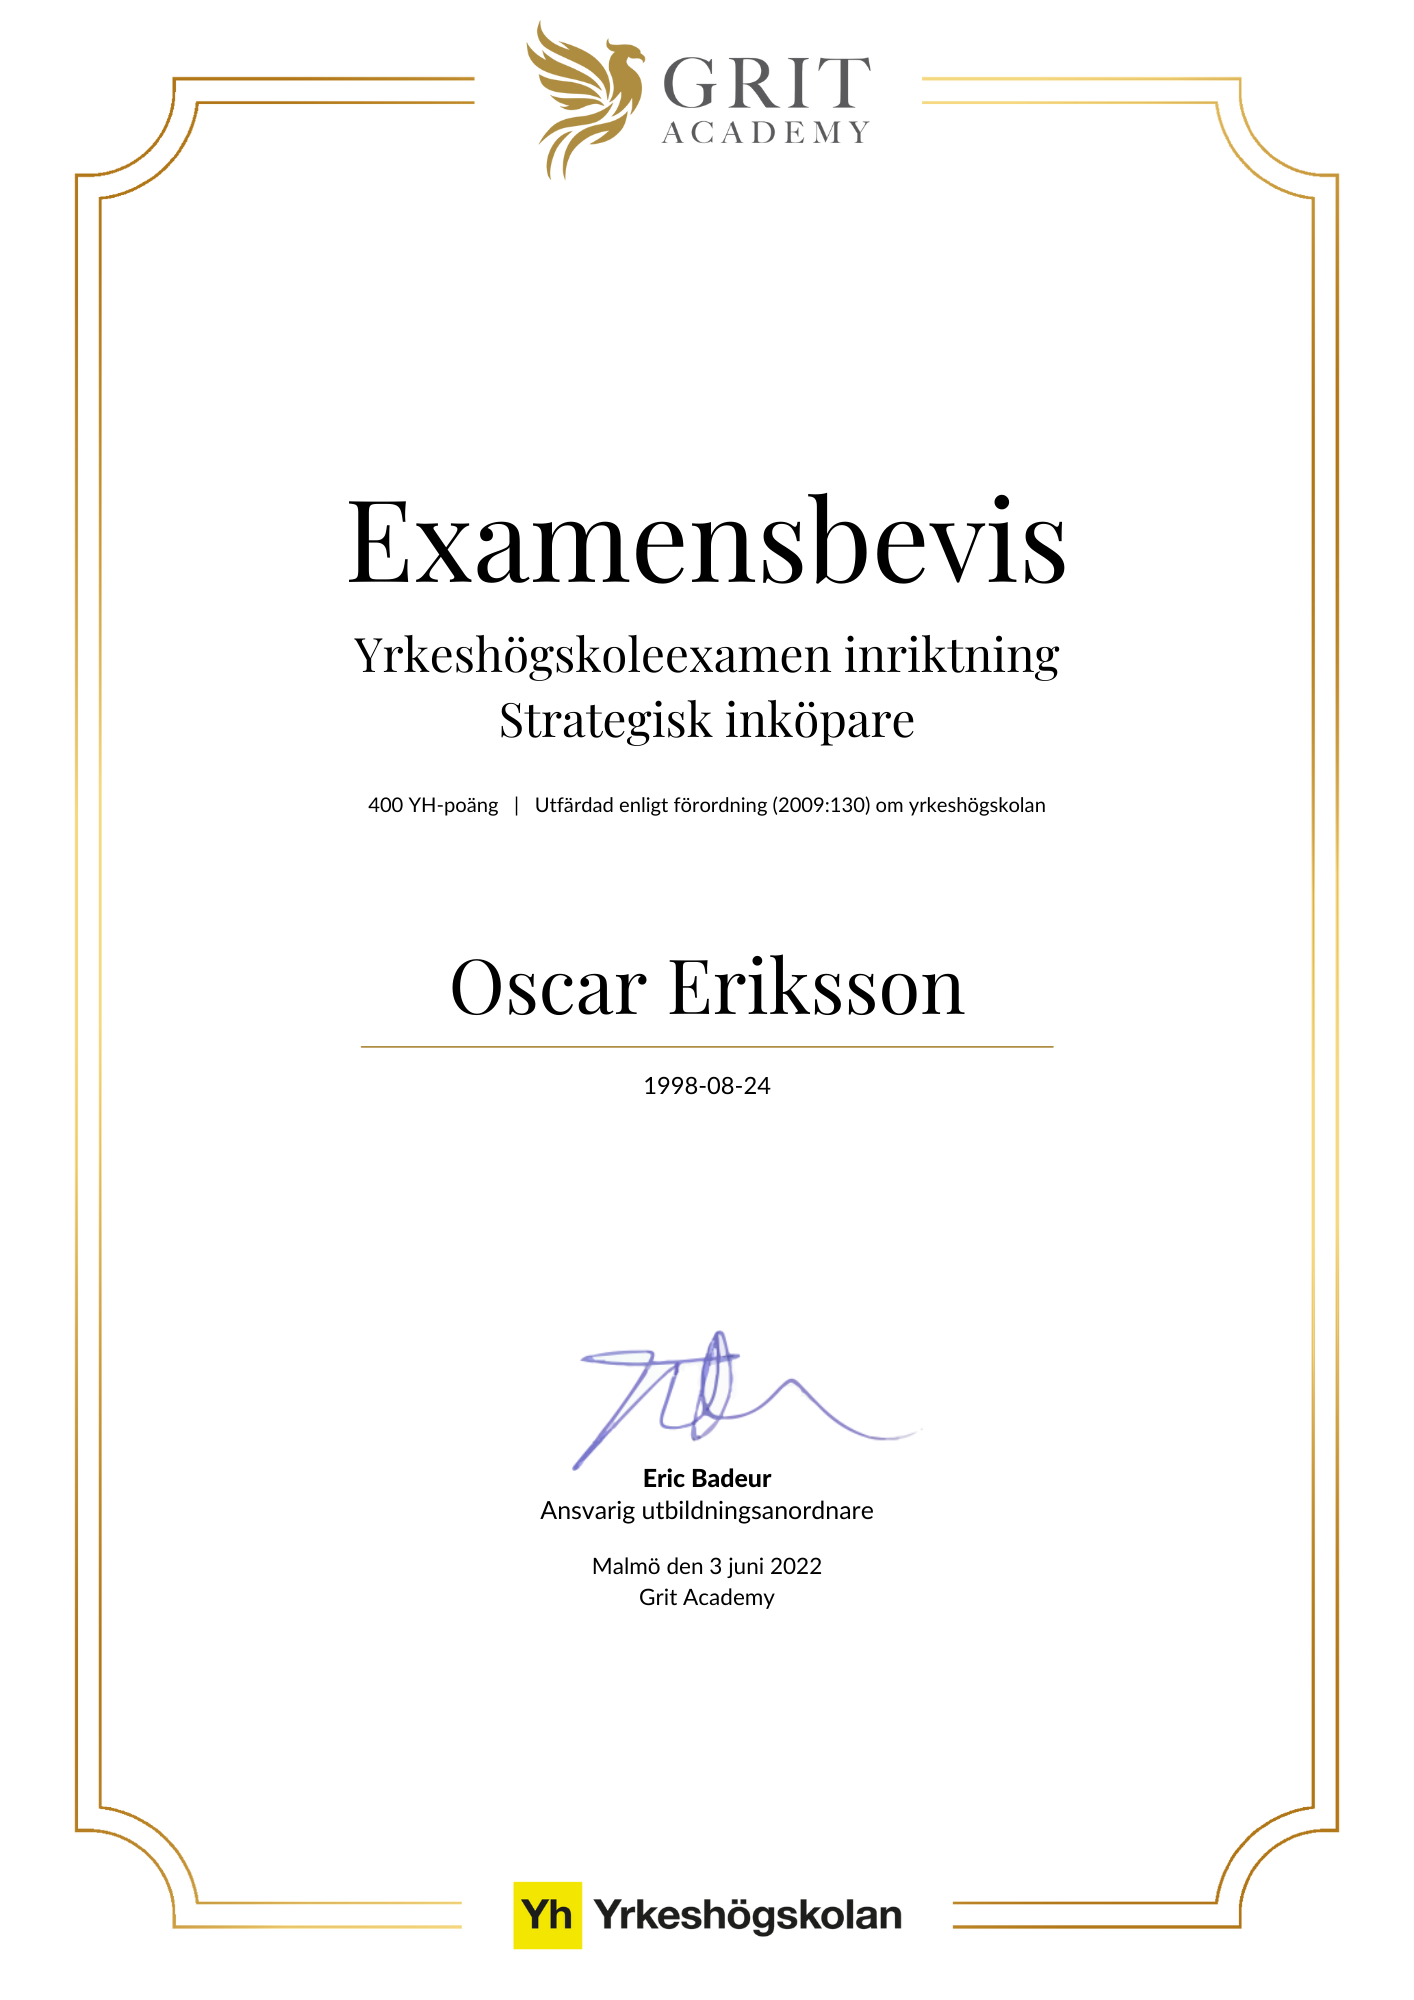 Examensbevis Oscar Eriksson - 1